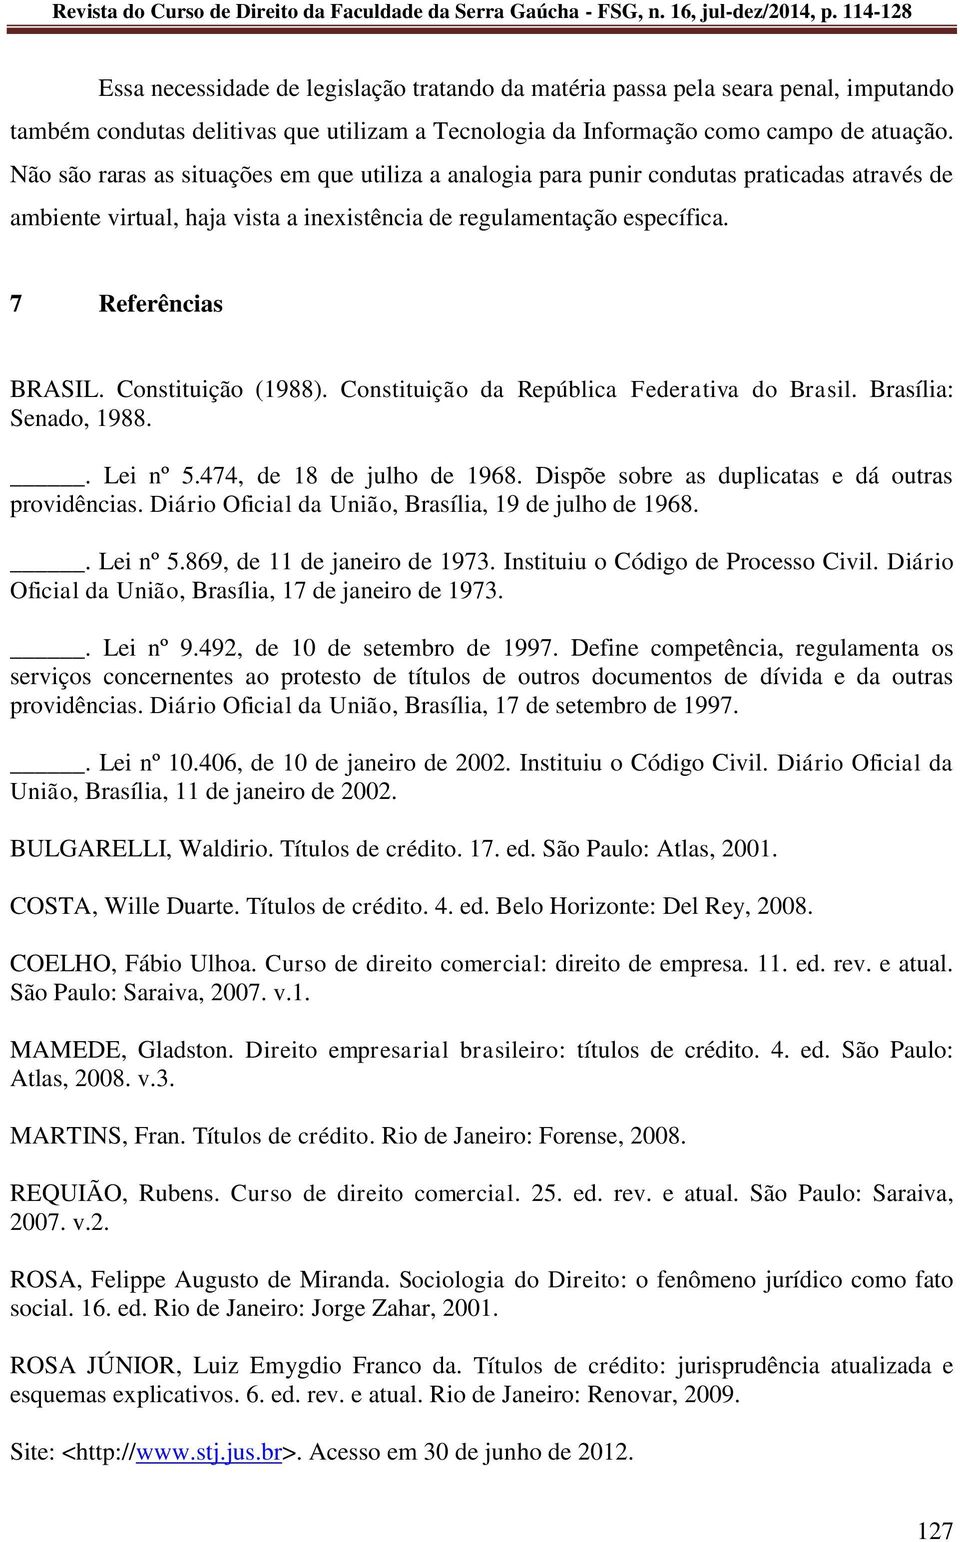 Constituição (1988). Constituição da República Federativa do Brasil. Brasília: Senado, 1988.. Lei nº 5.474, de 18 de julho de 1968. Dispõe sobre as duplicatas e dá outras providências.